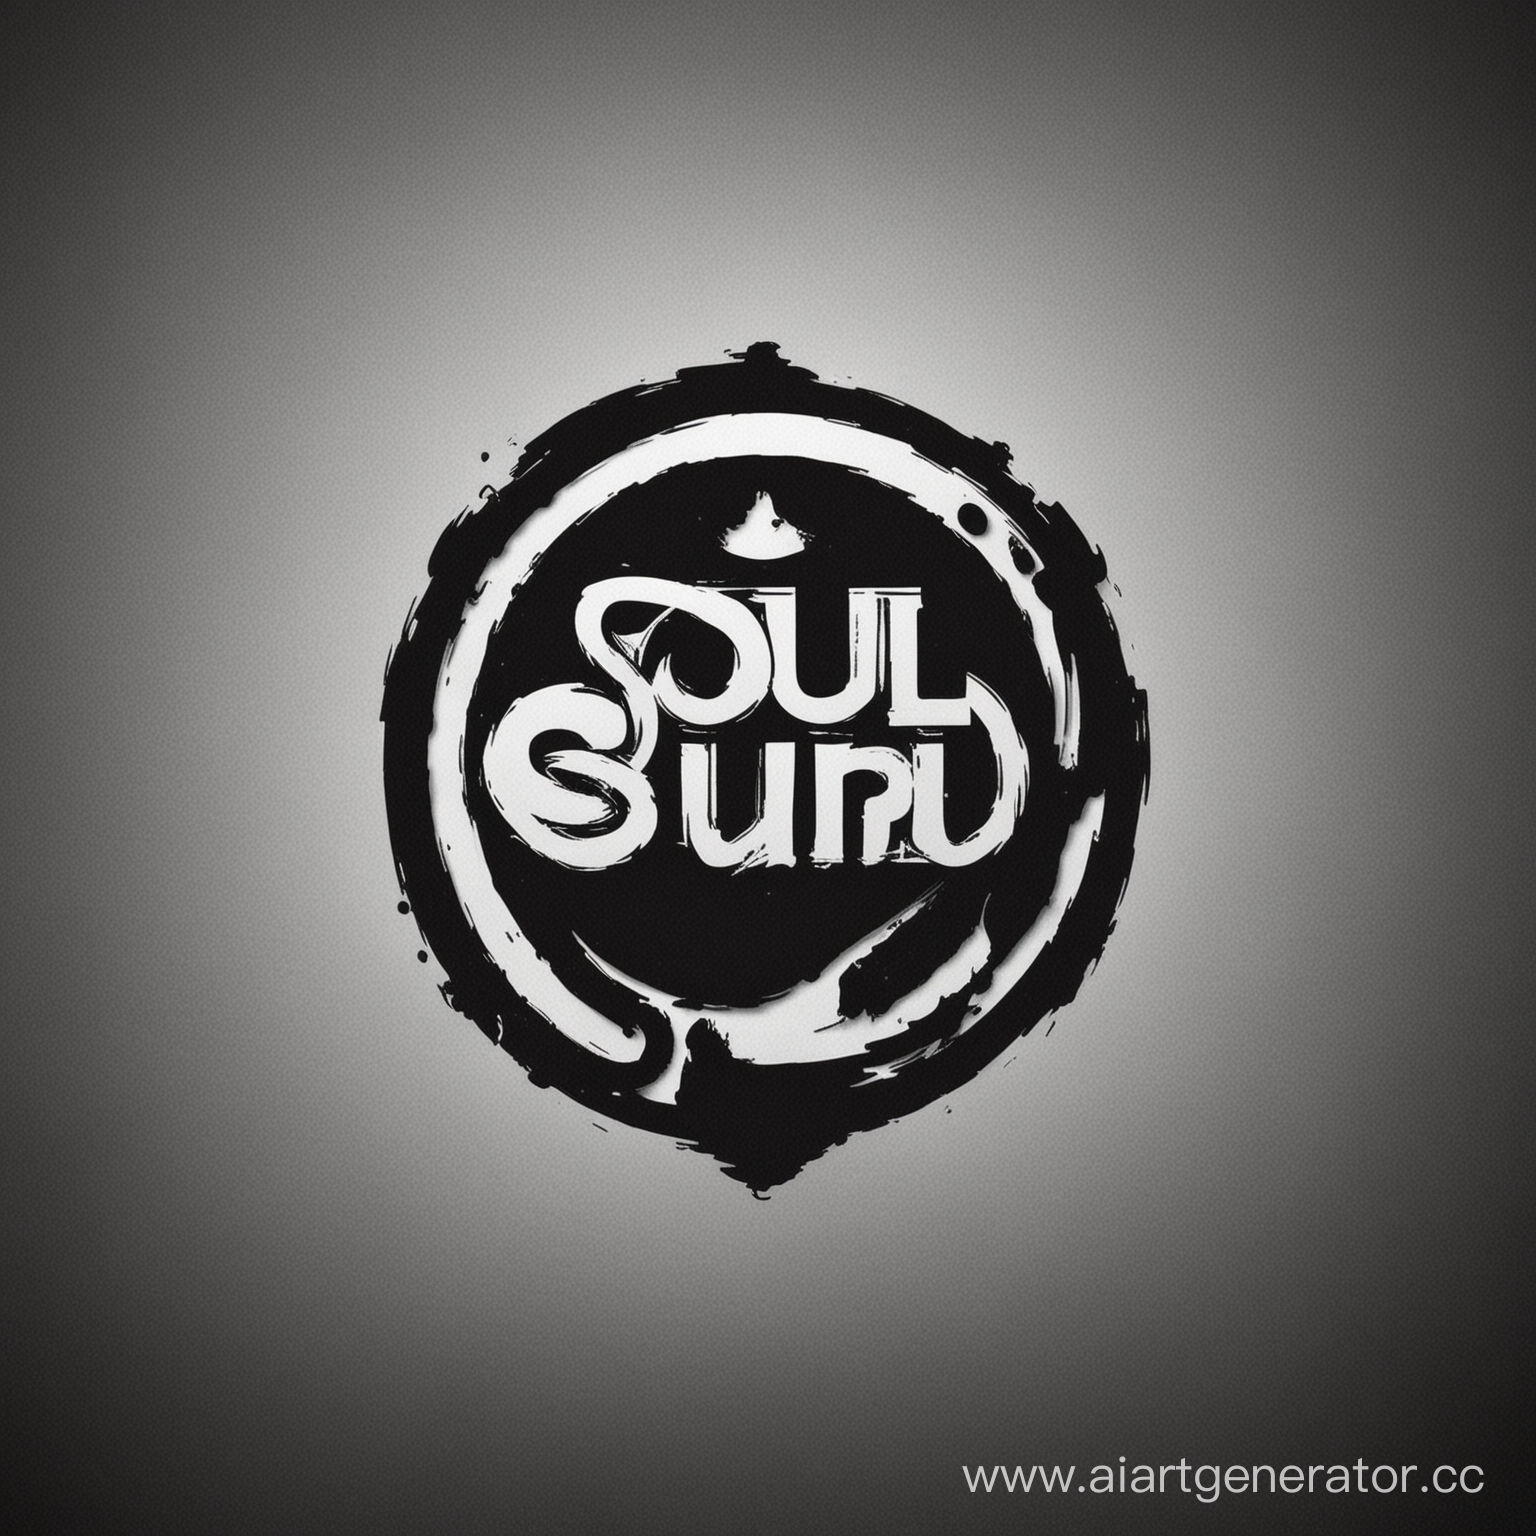 сделай черно-белое лого для музыкального лейбла диджеев под названием soul sound